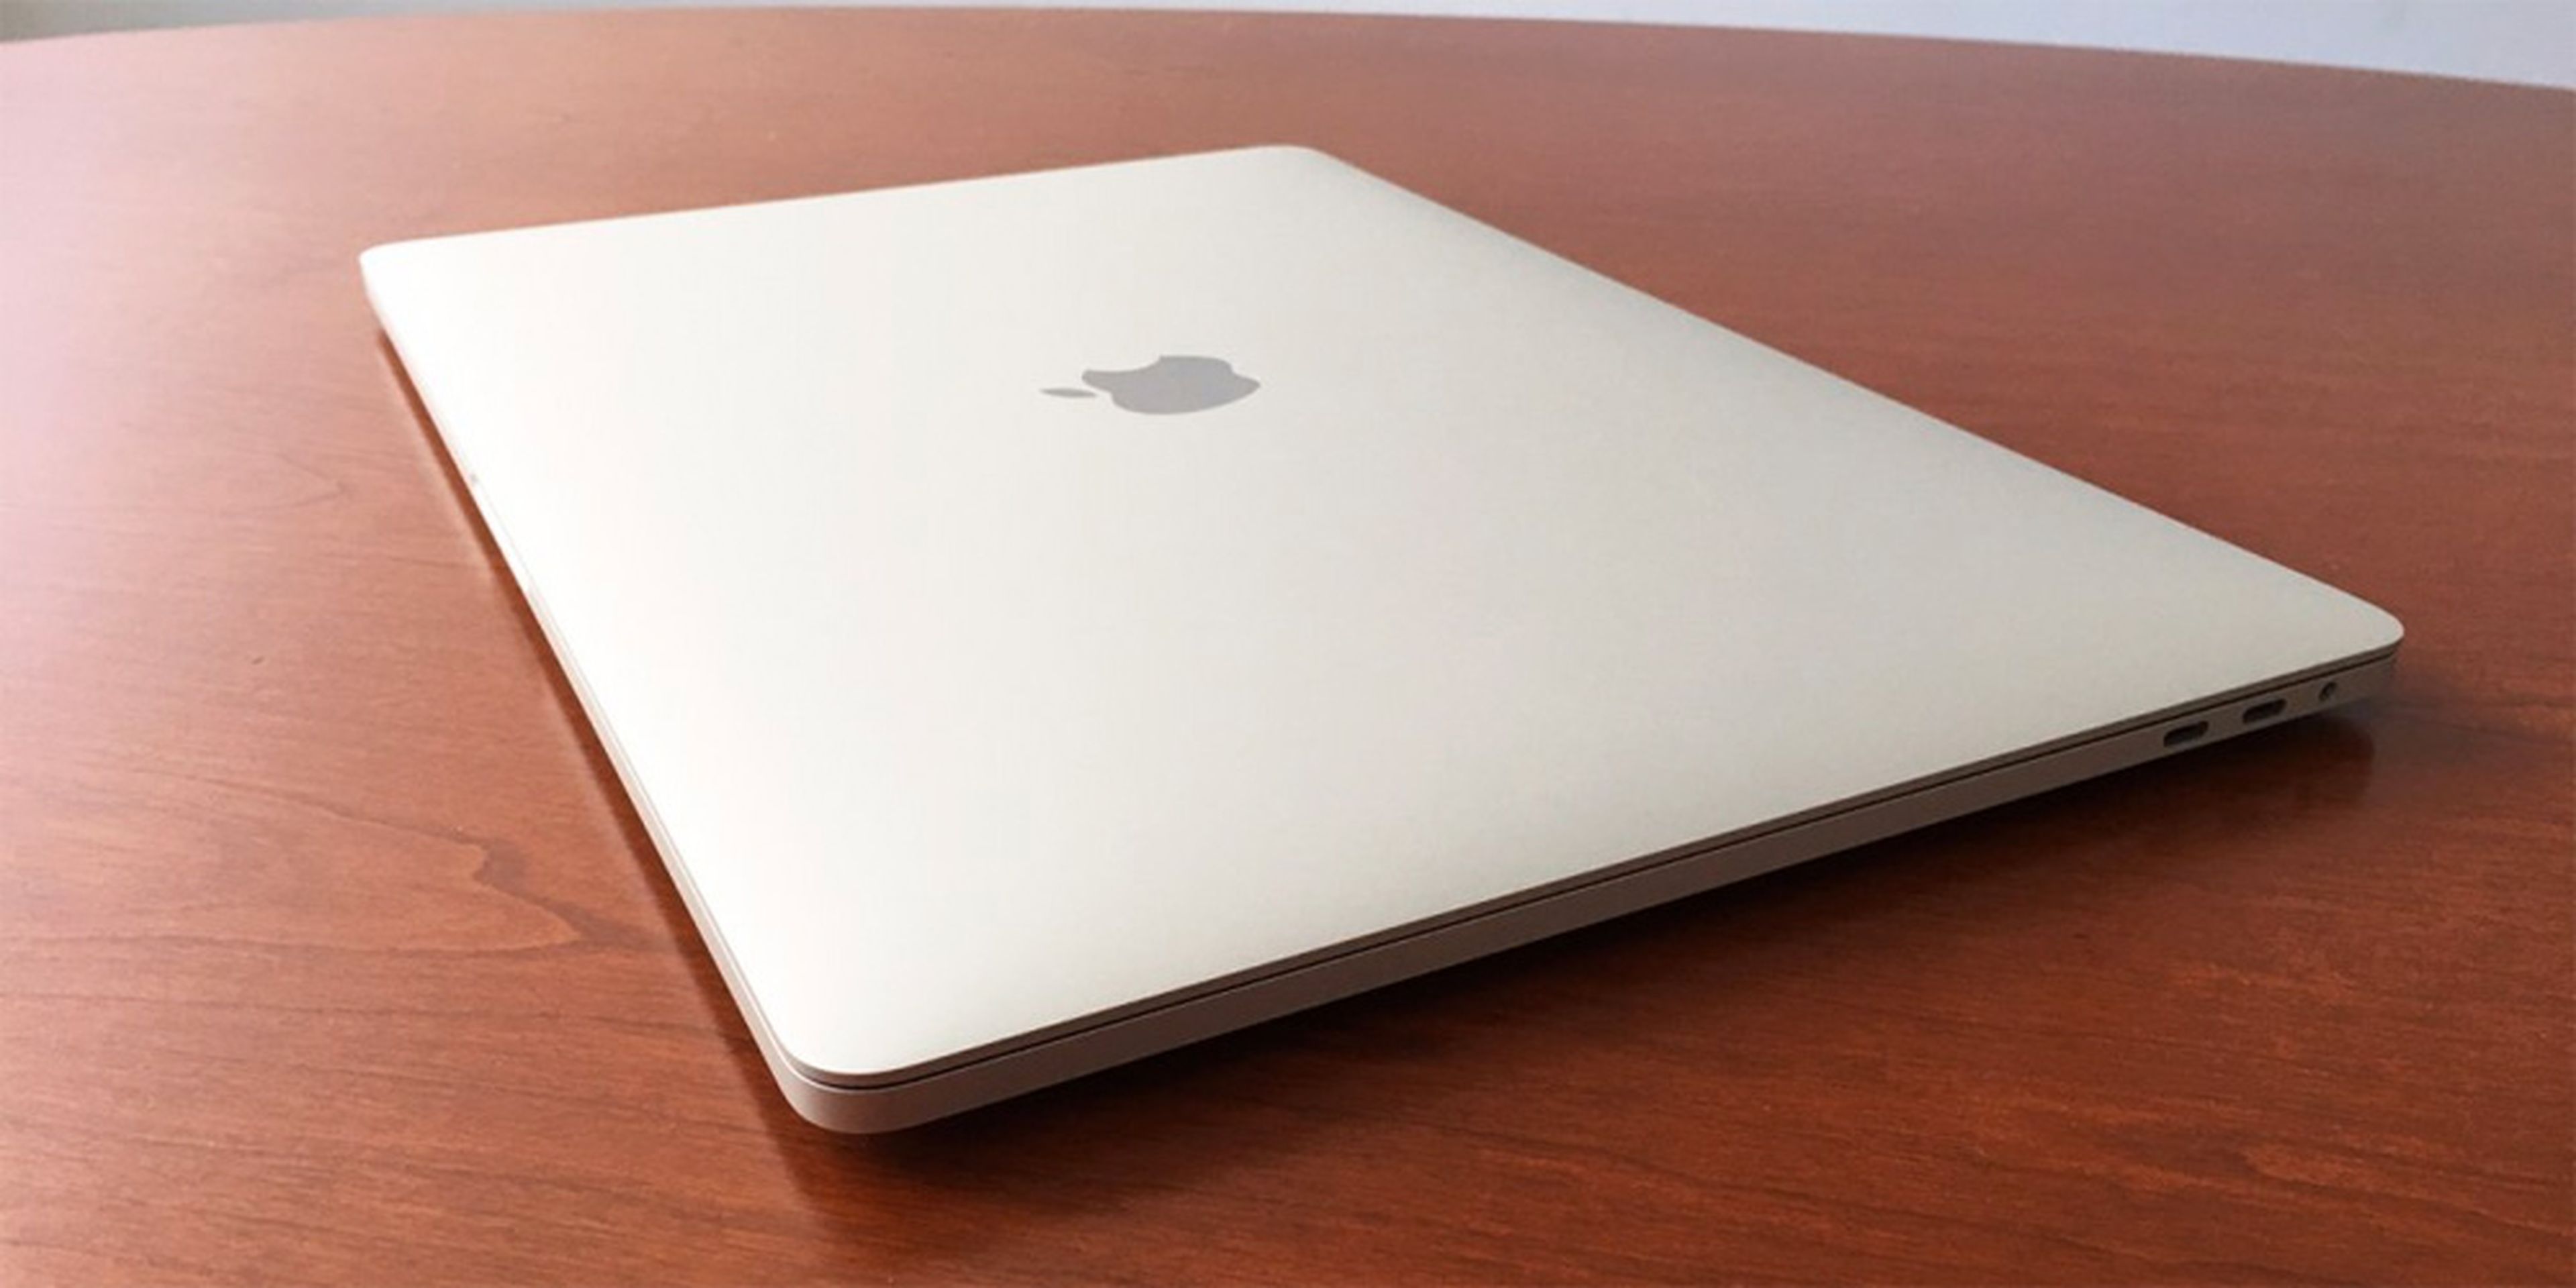 MacBook Pro encima de la mesa